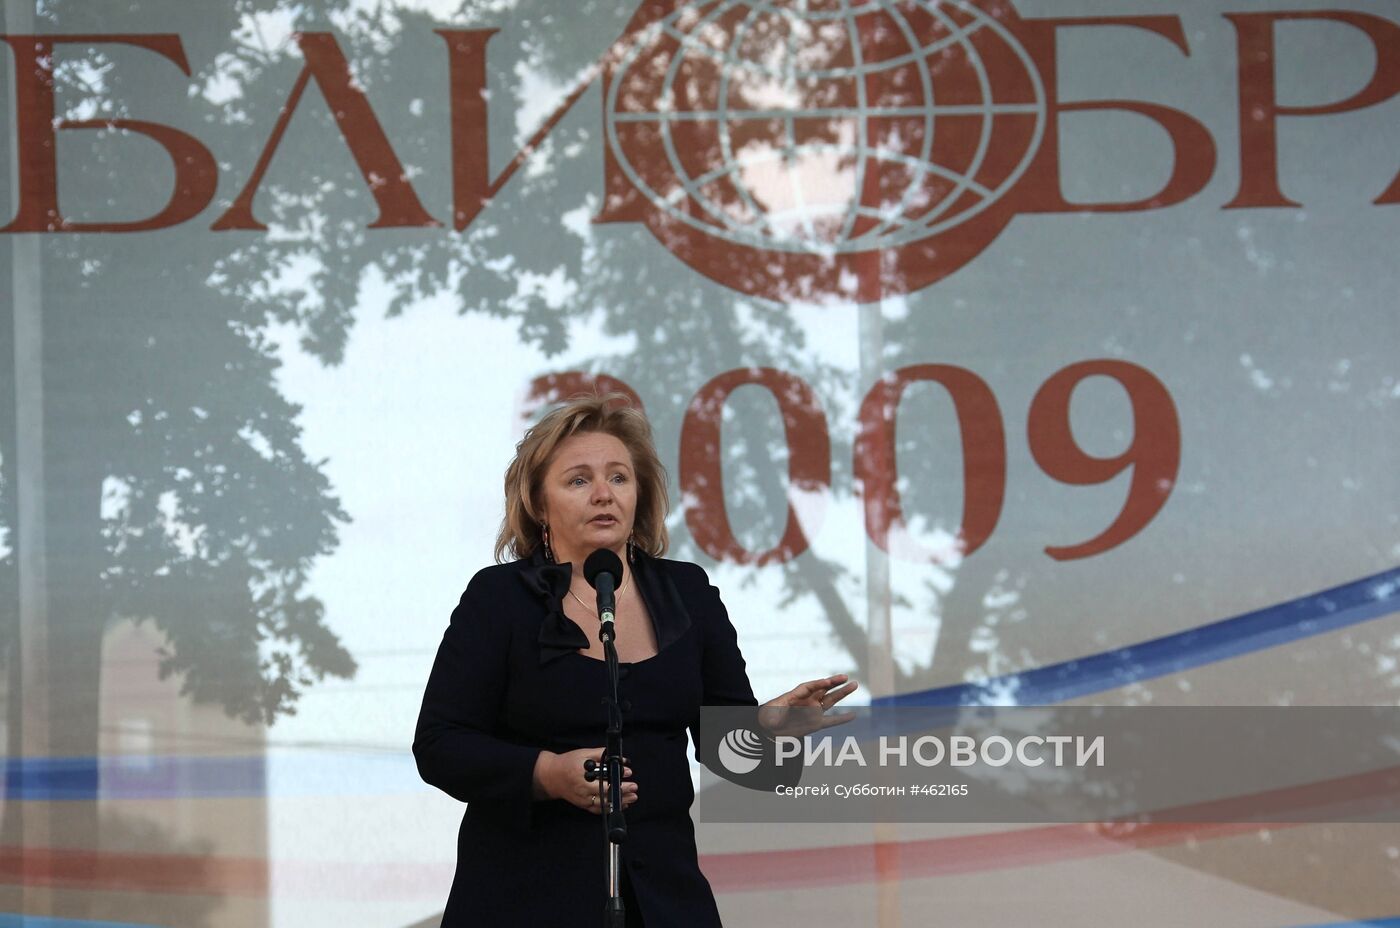 Л.Путина открыла фестиваль "БиблиОбраз - 2009" в Калининграде